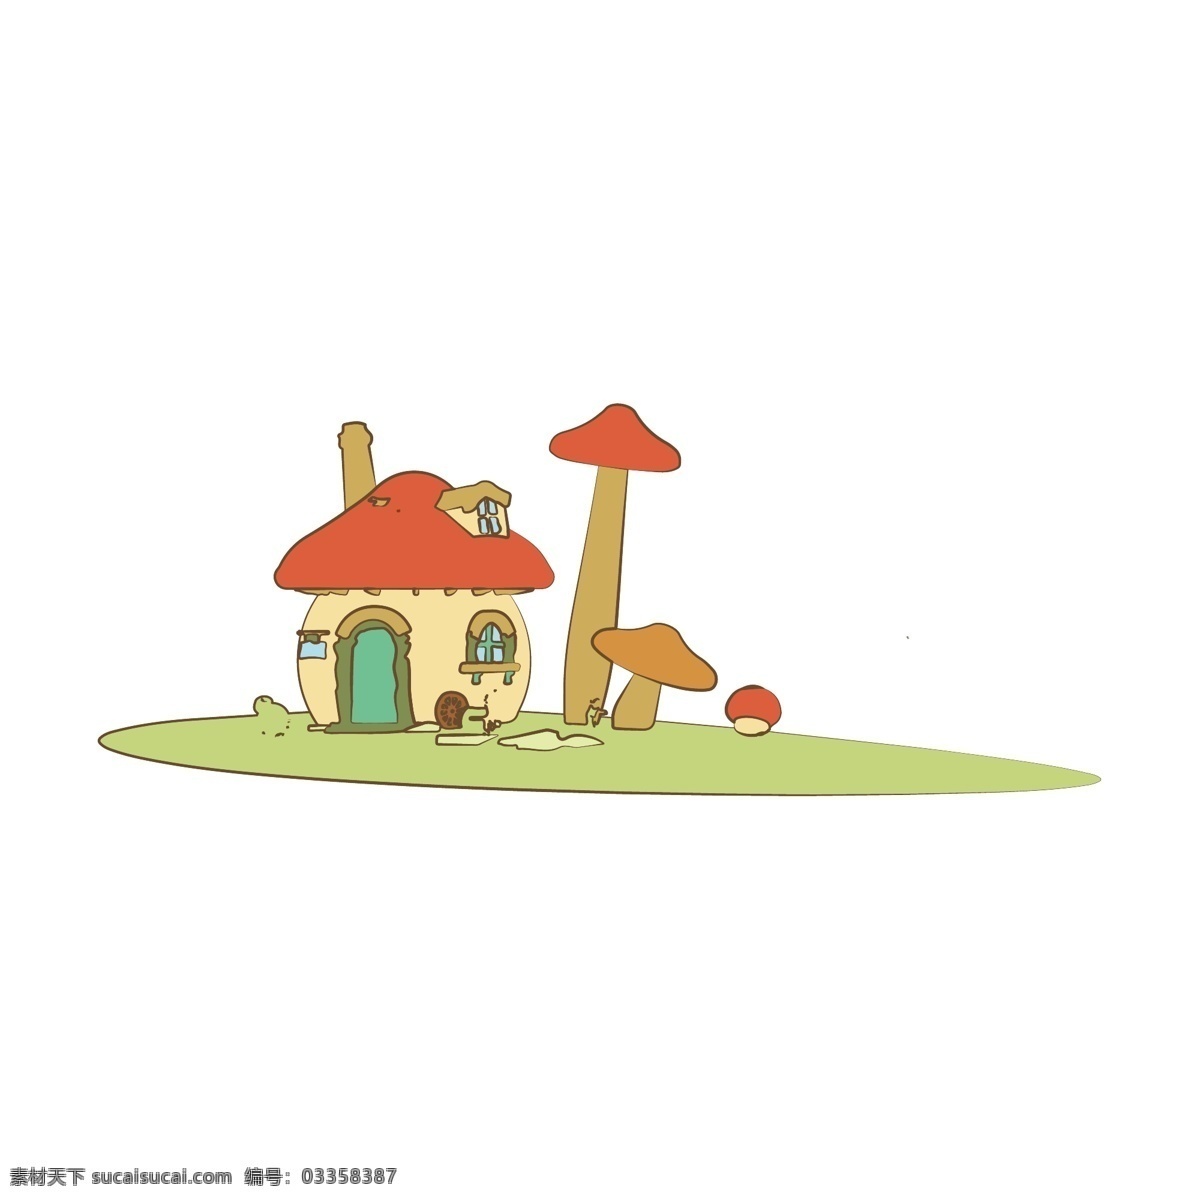 简约 扁平 卡通 儿童乐园 滑梯 插图 元素 幼儿园 设施 蘑菇屋